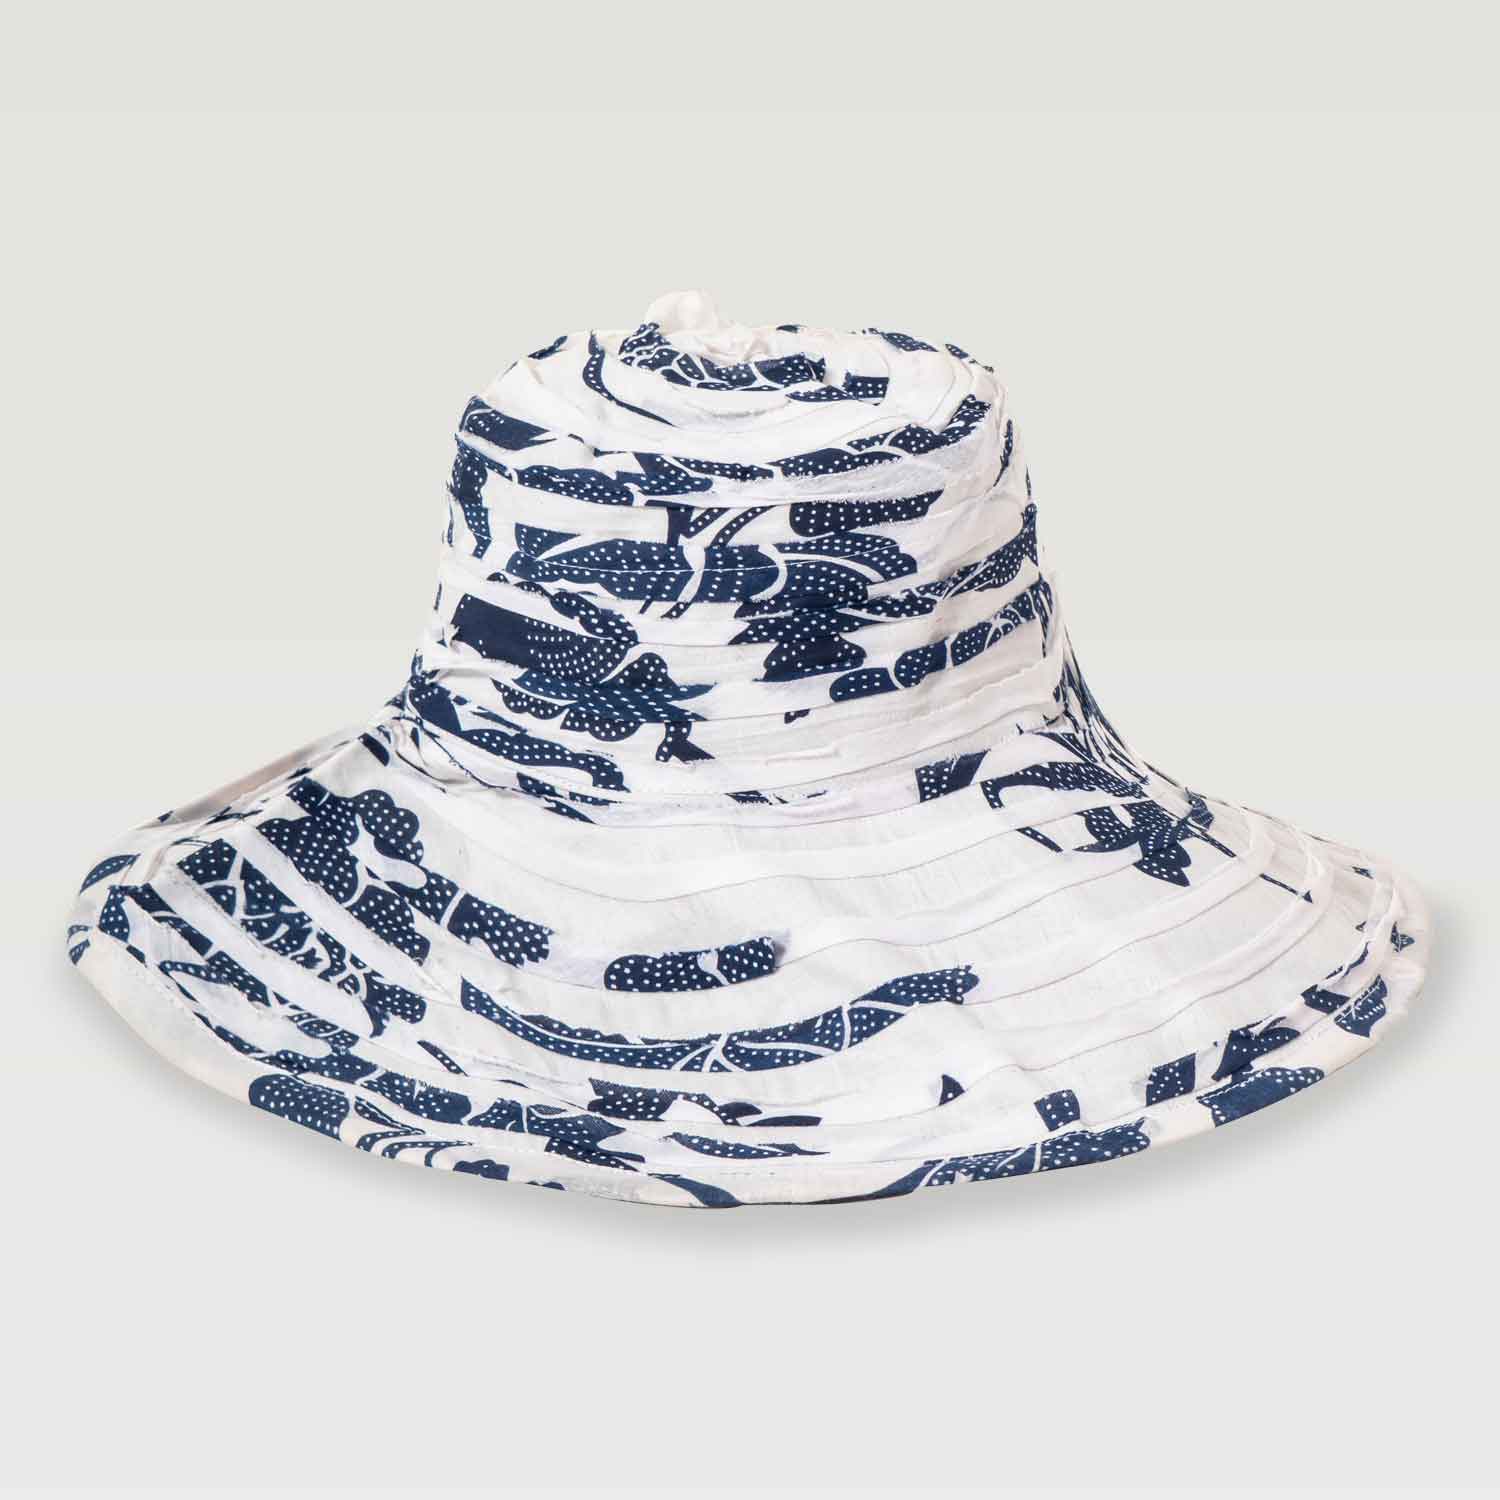 Cappello in cotone bianco e blu